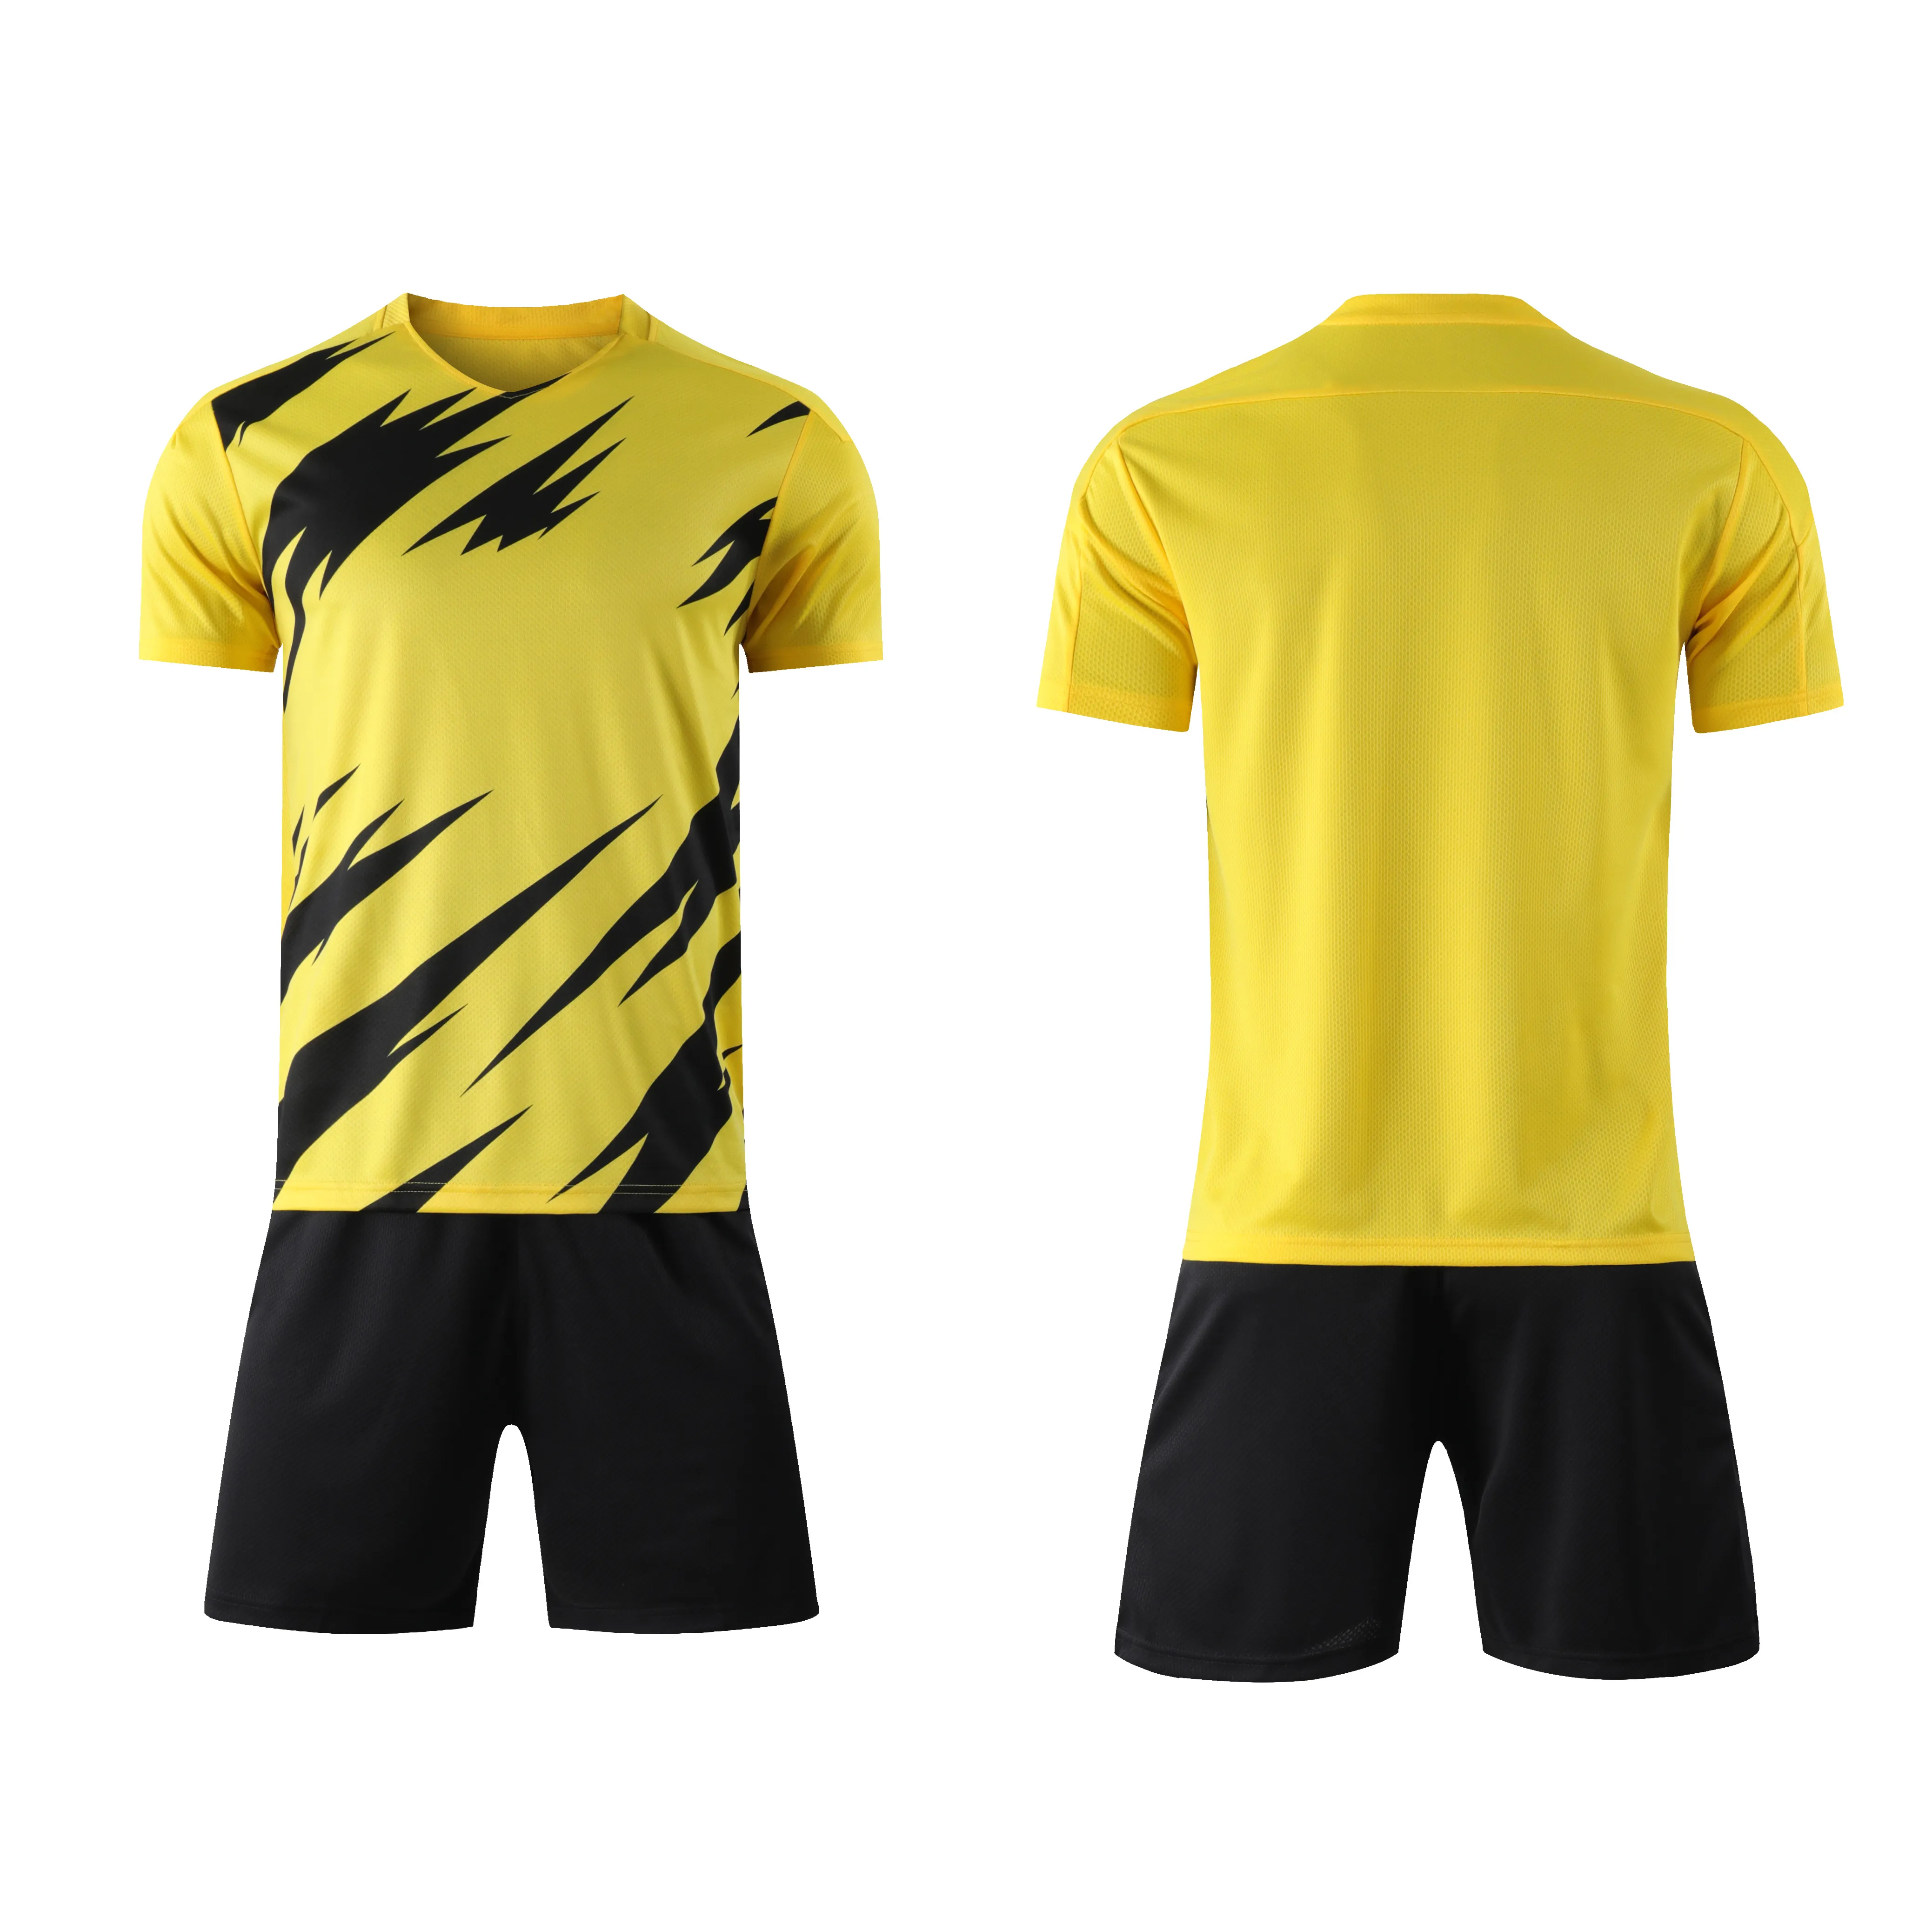 Camisetas de fútbol a rayas para hombres, Jersey de fútbol amarillo de calidad tailandesa, nueva temporada, venta al por mayor, 21/22